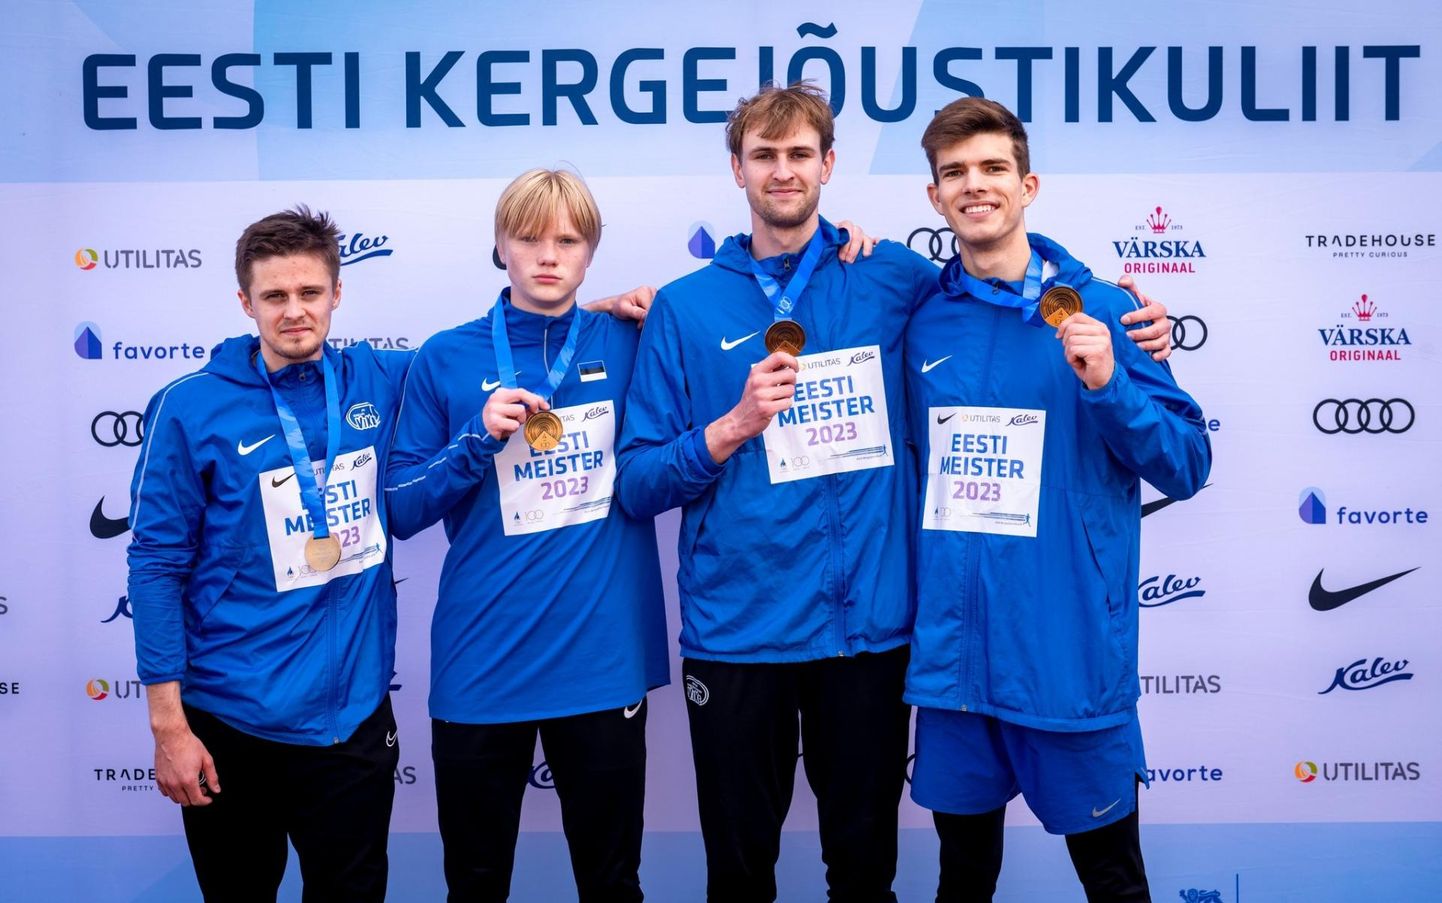 Kergejõustikuklubi ViKe noormehed tulid Eesti meistriks 4 x 100 meetri teatejooksus.